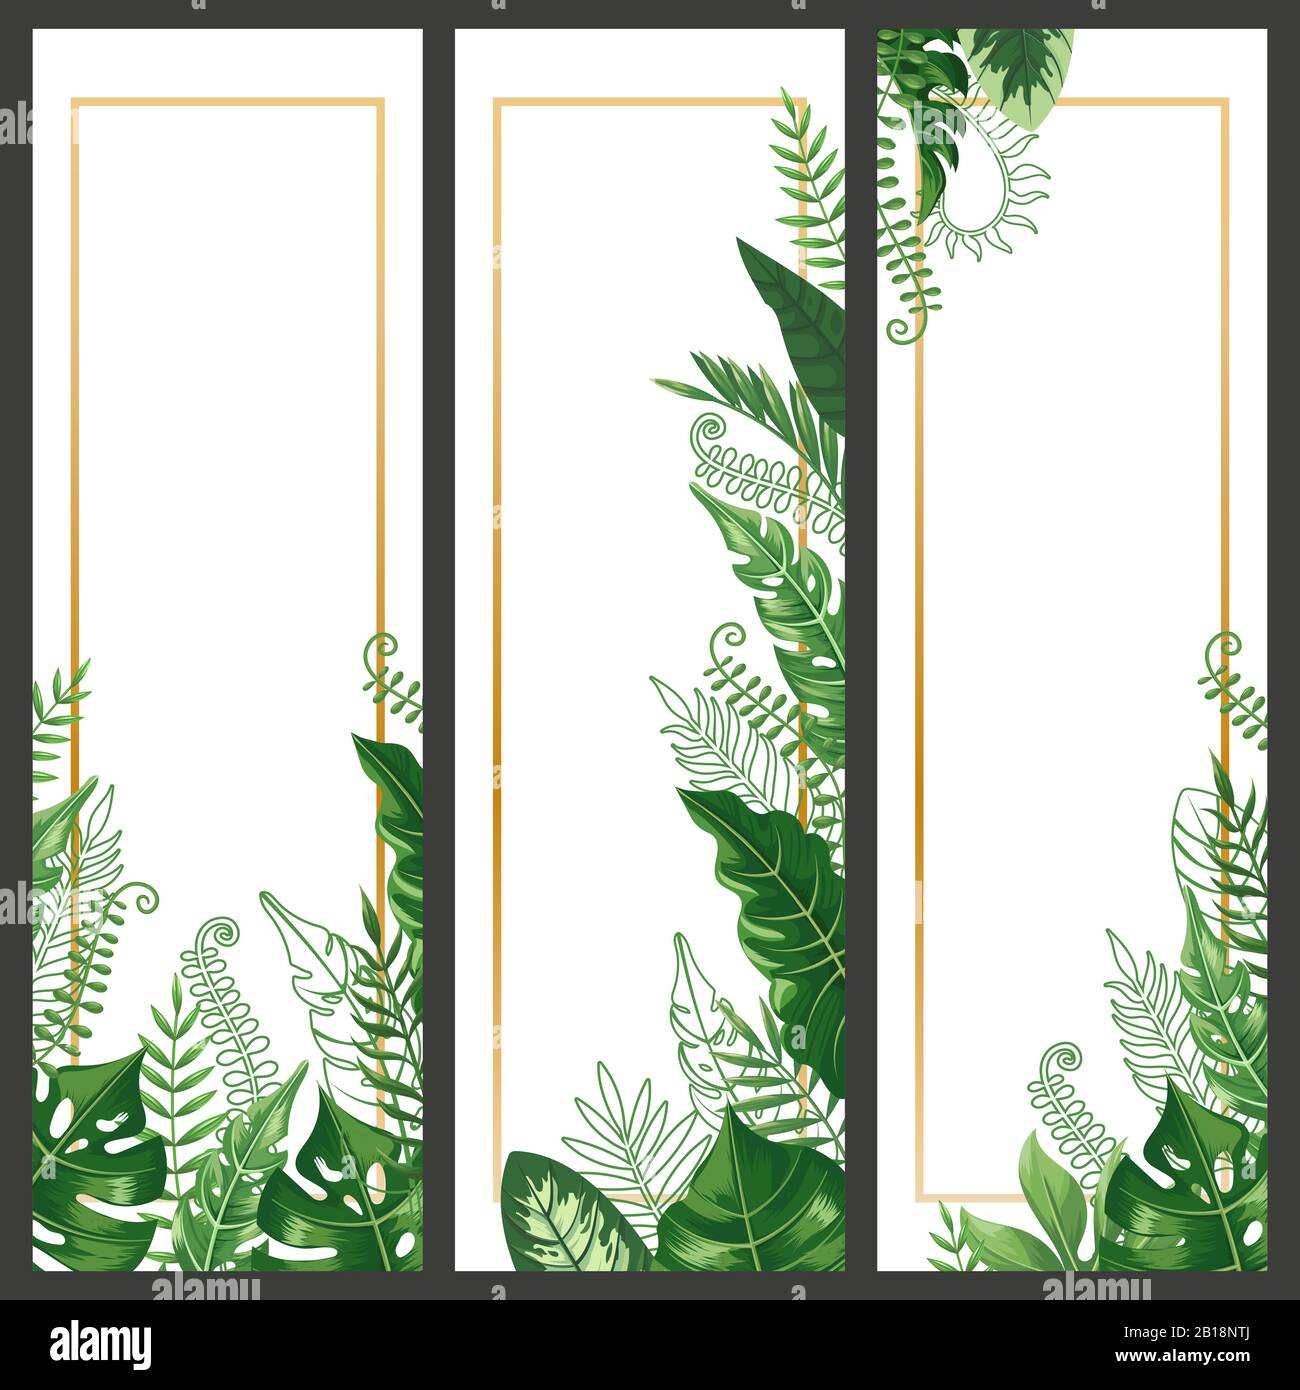 Bannière de feuilles exotiques. Feuilles de monstère tropicale, branche de palmiers et plantes de nature vintage hawaï banderoles verticales vecteur arrière-plan set Illustration de Vecteur